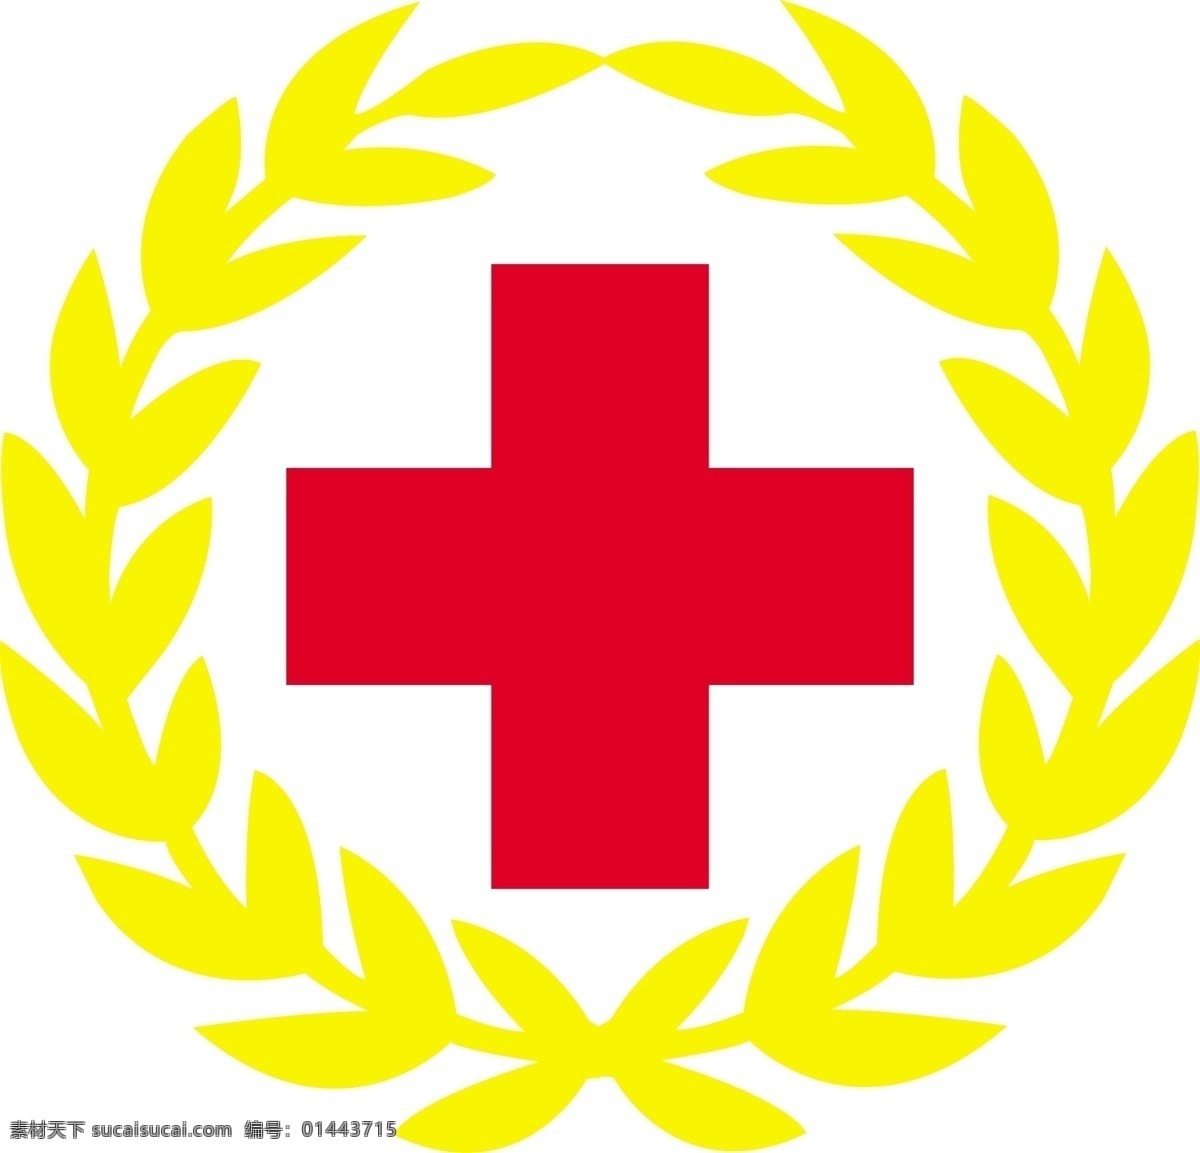 红十字会 会徽 logo 标志 橄榄枝 模板 设计稿 素材元素 医疗救助 爱心机构 源文件 矢量图